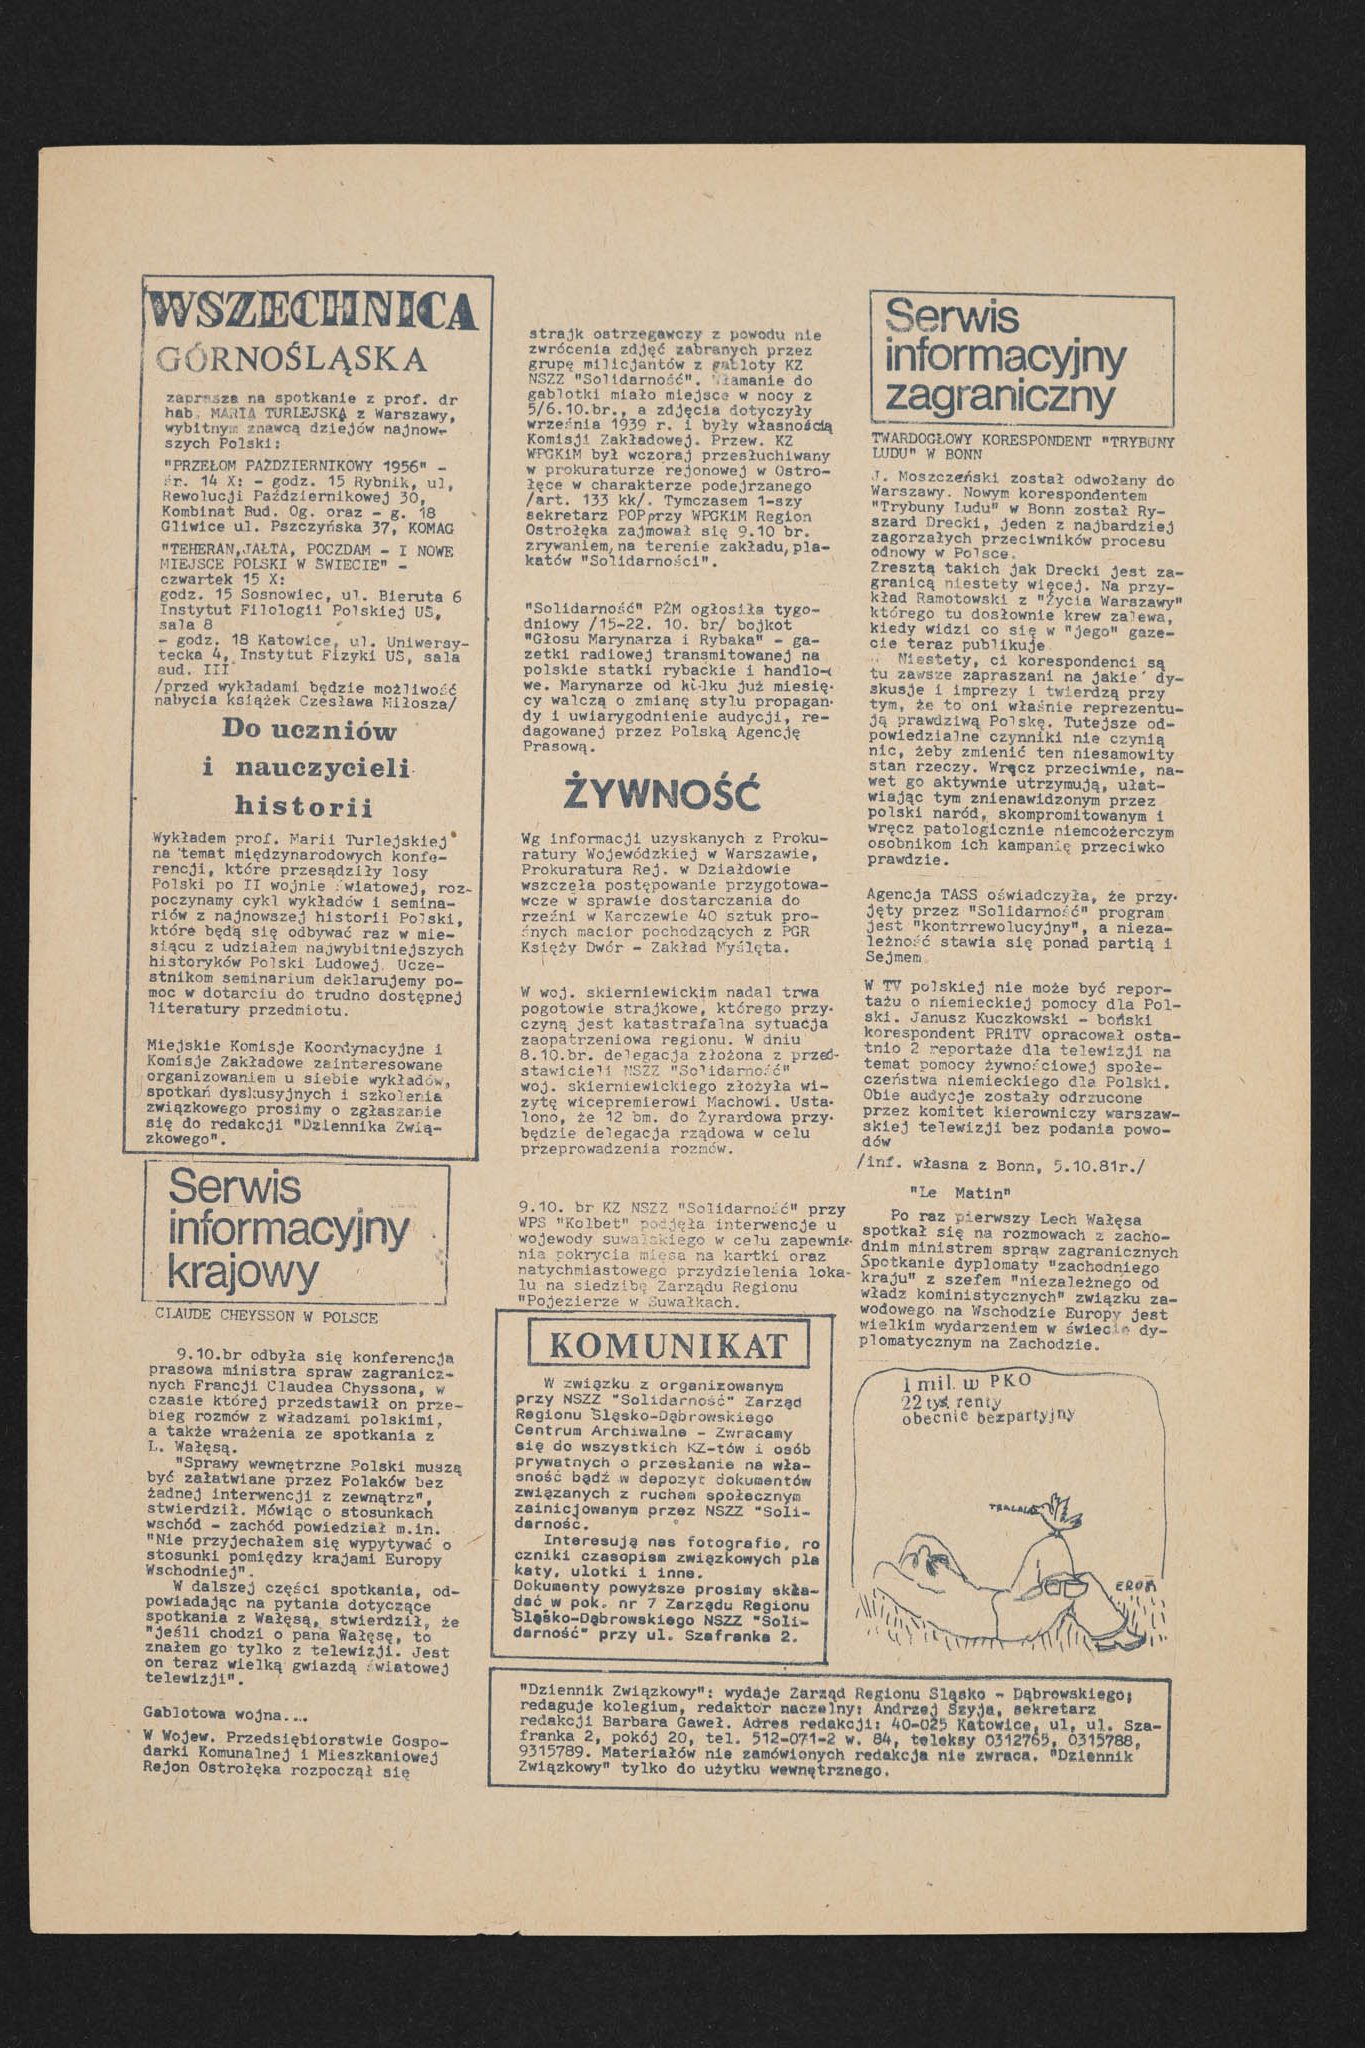 Dziennik związkowy nr 34 12.10.1981